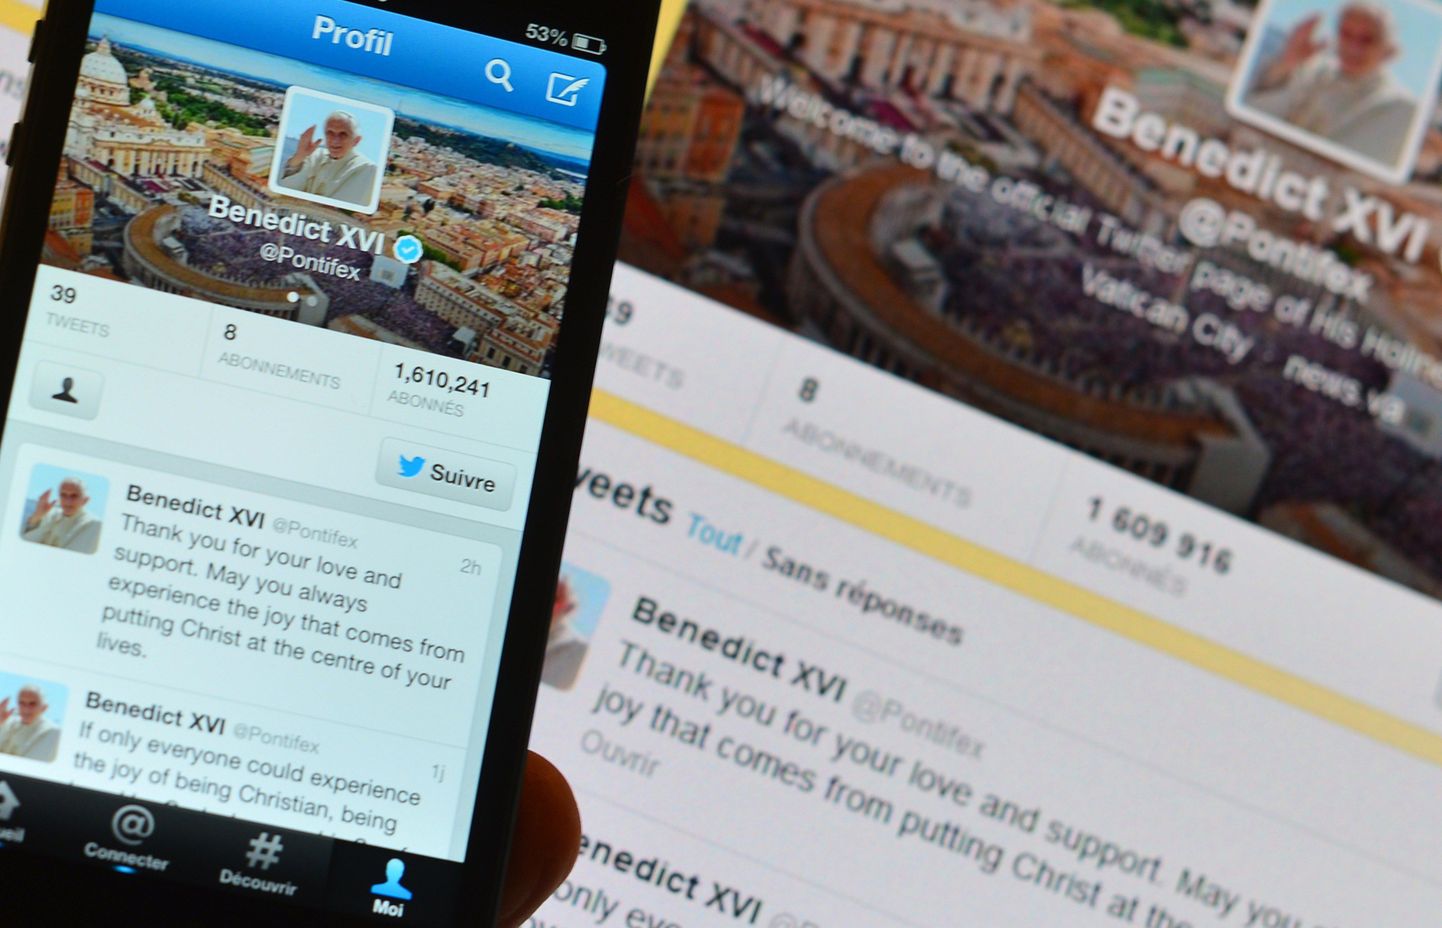 Twitteris olnud konto, mis väidetavalt kuulus Argentina kardinalile Jorge Mario Bergogliole, nüüdsele paavst Franciscusele, suleti eile. Pildil eelmsie paavsti Benedictus XVI Twitteris sõnumid